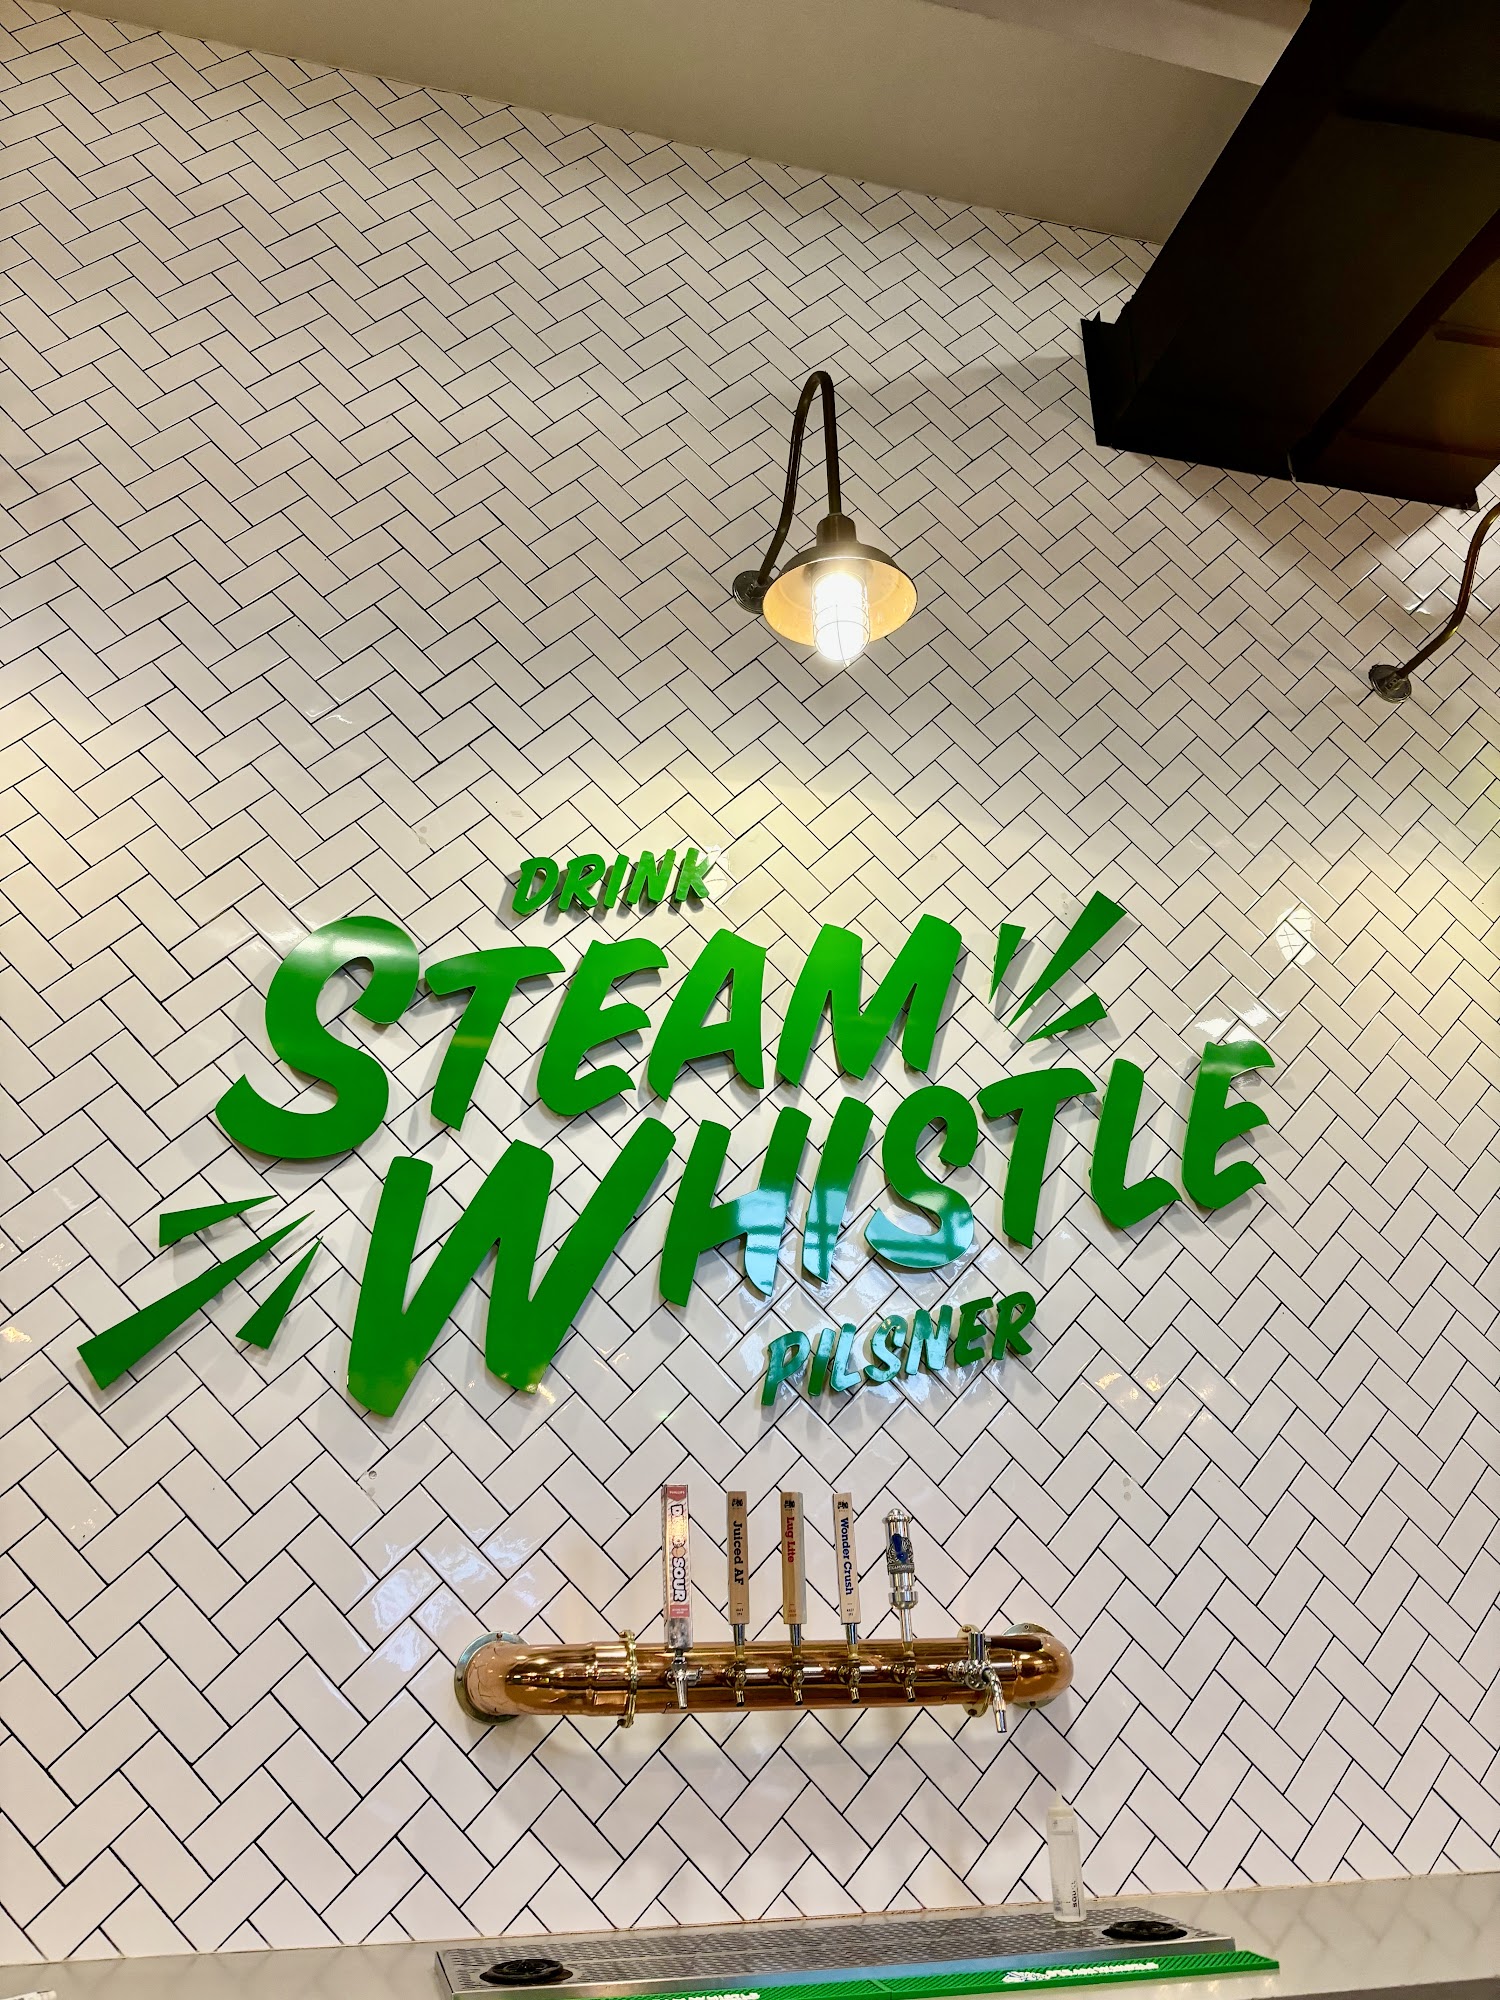 Steam Whistle Kitchen